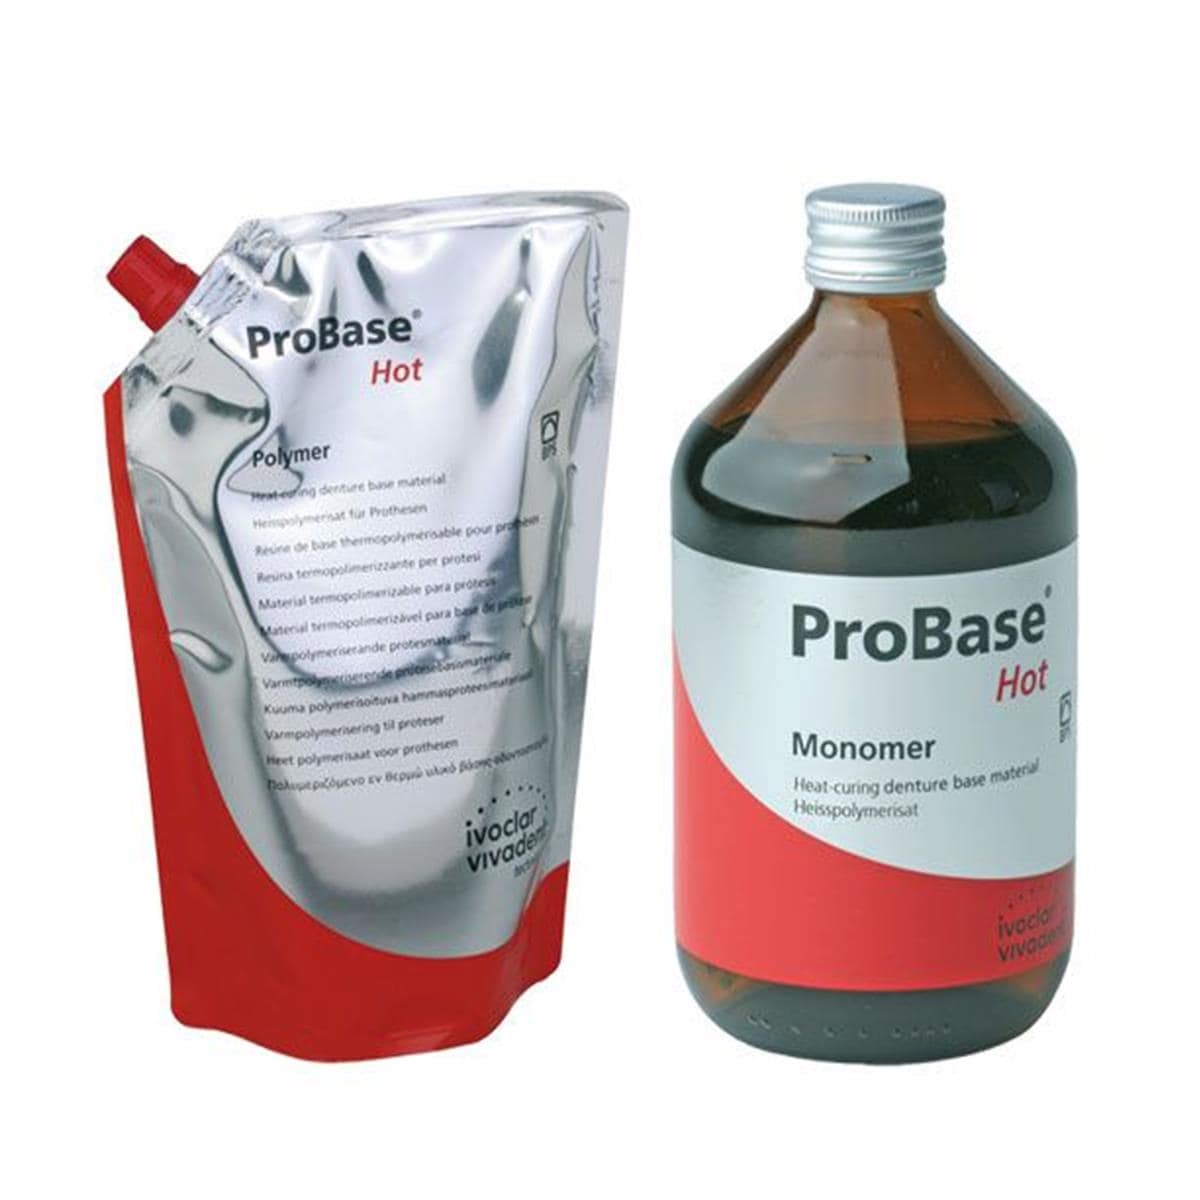 Probase Hot IVOCLAR - La portion de 2,5 kg + 1 l - 36P